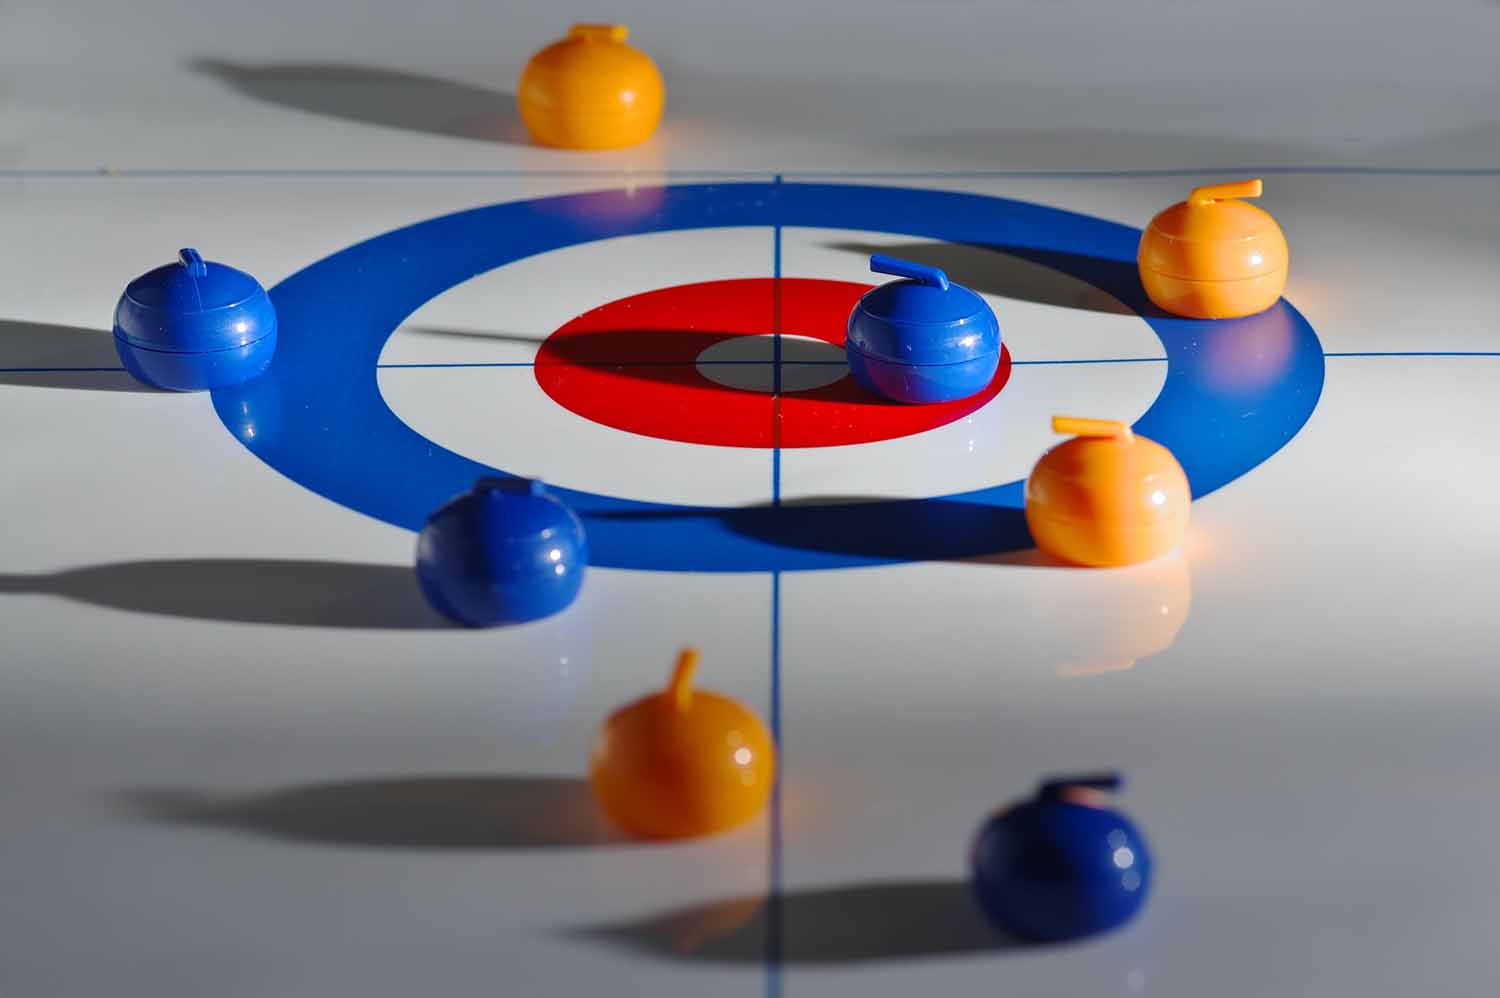 O Curling é uma das modalidades esportivas coletivas mais antiga no mundo, tendo o Canadá como potência mundial no esporte